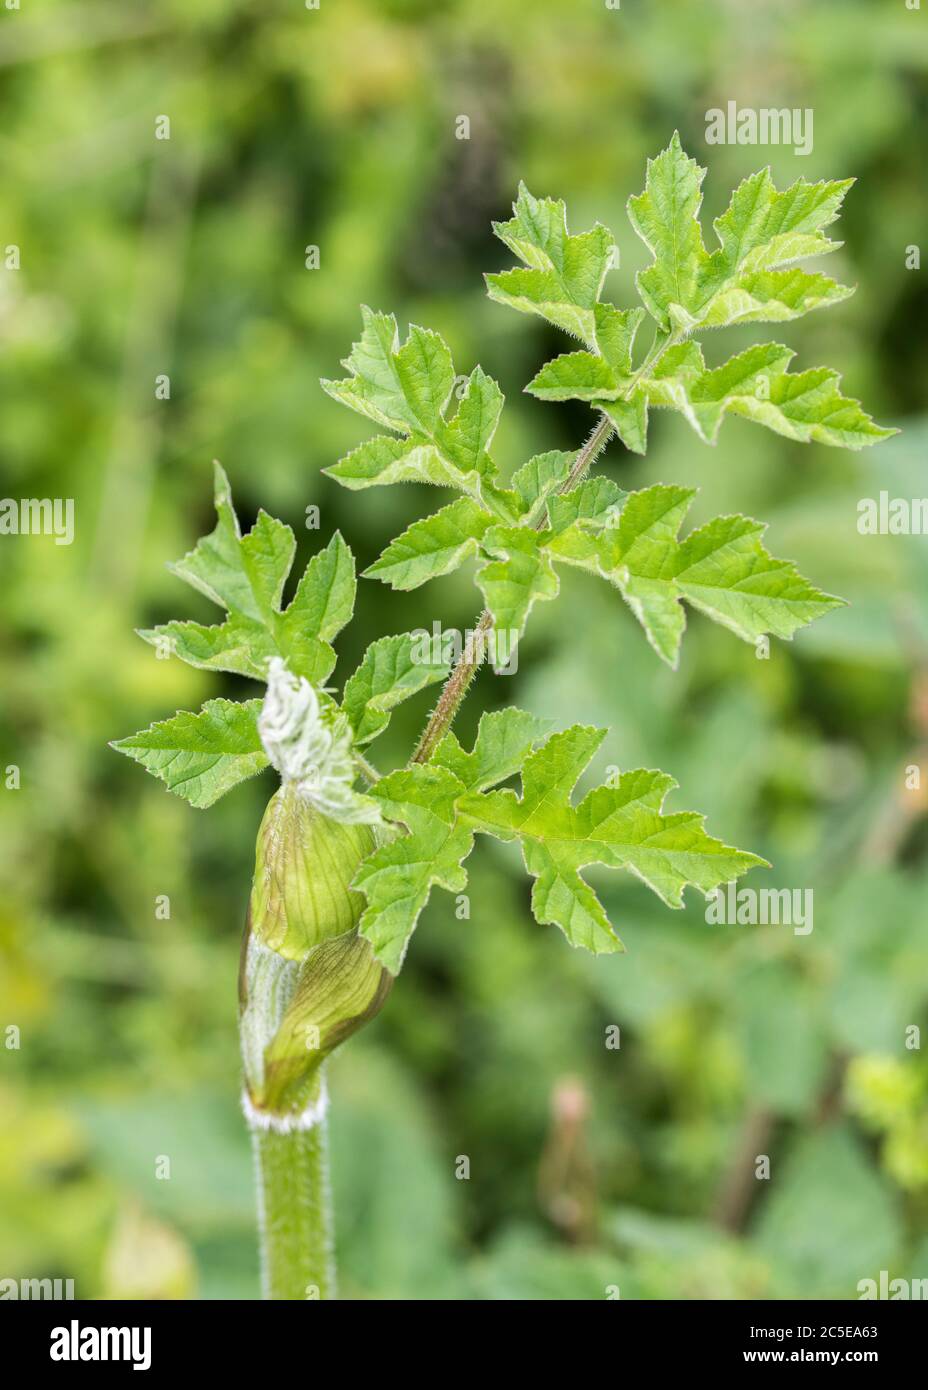 Hoja verde pálido joven / prospecto de Hogweed, Cow Pasnip / Heacleum sphondylium. Maleza común del Reino Unido de tierra de desecho, heedgerows y agricultura. Foto de stock